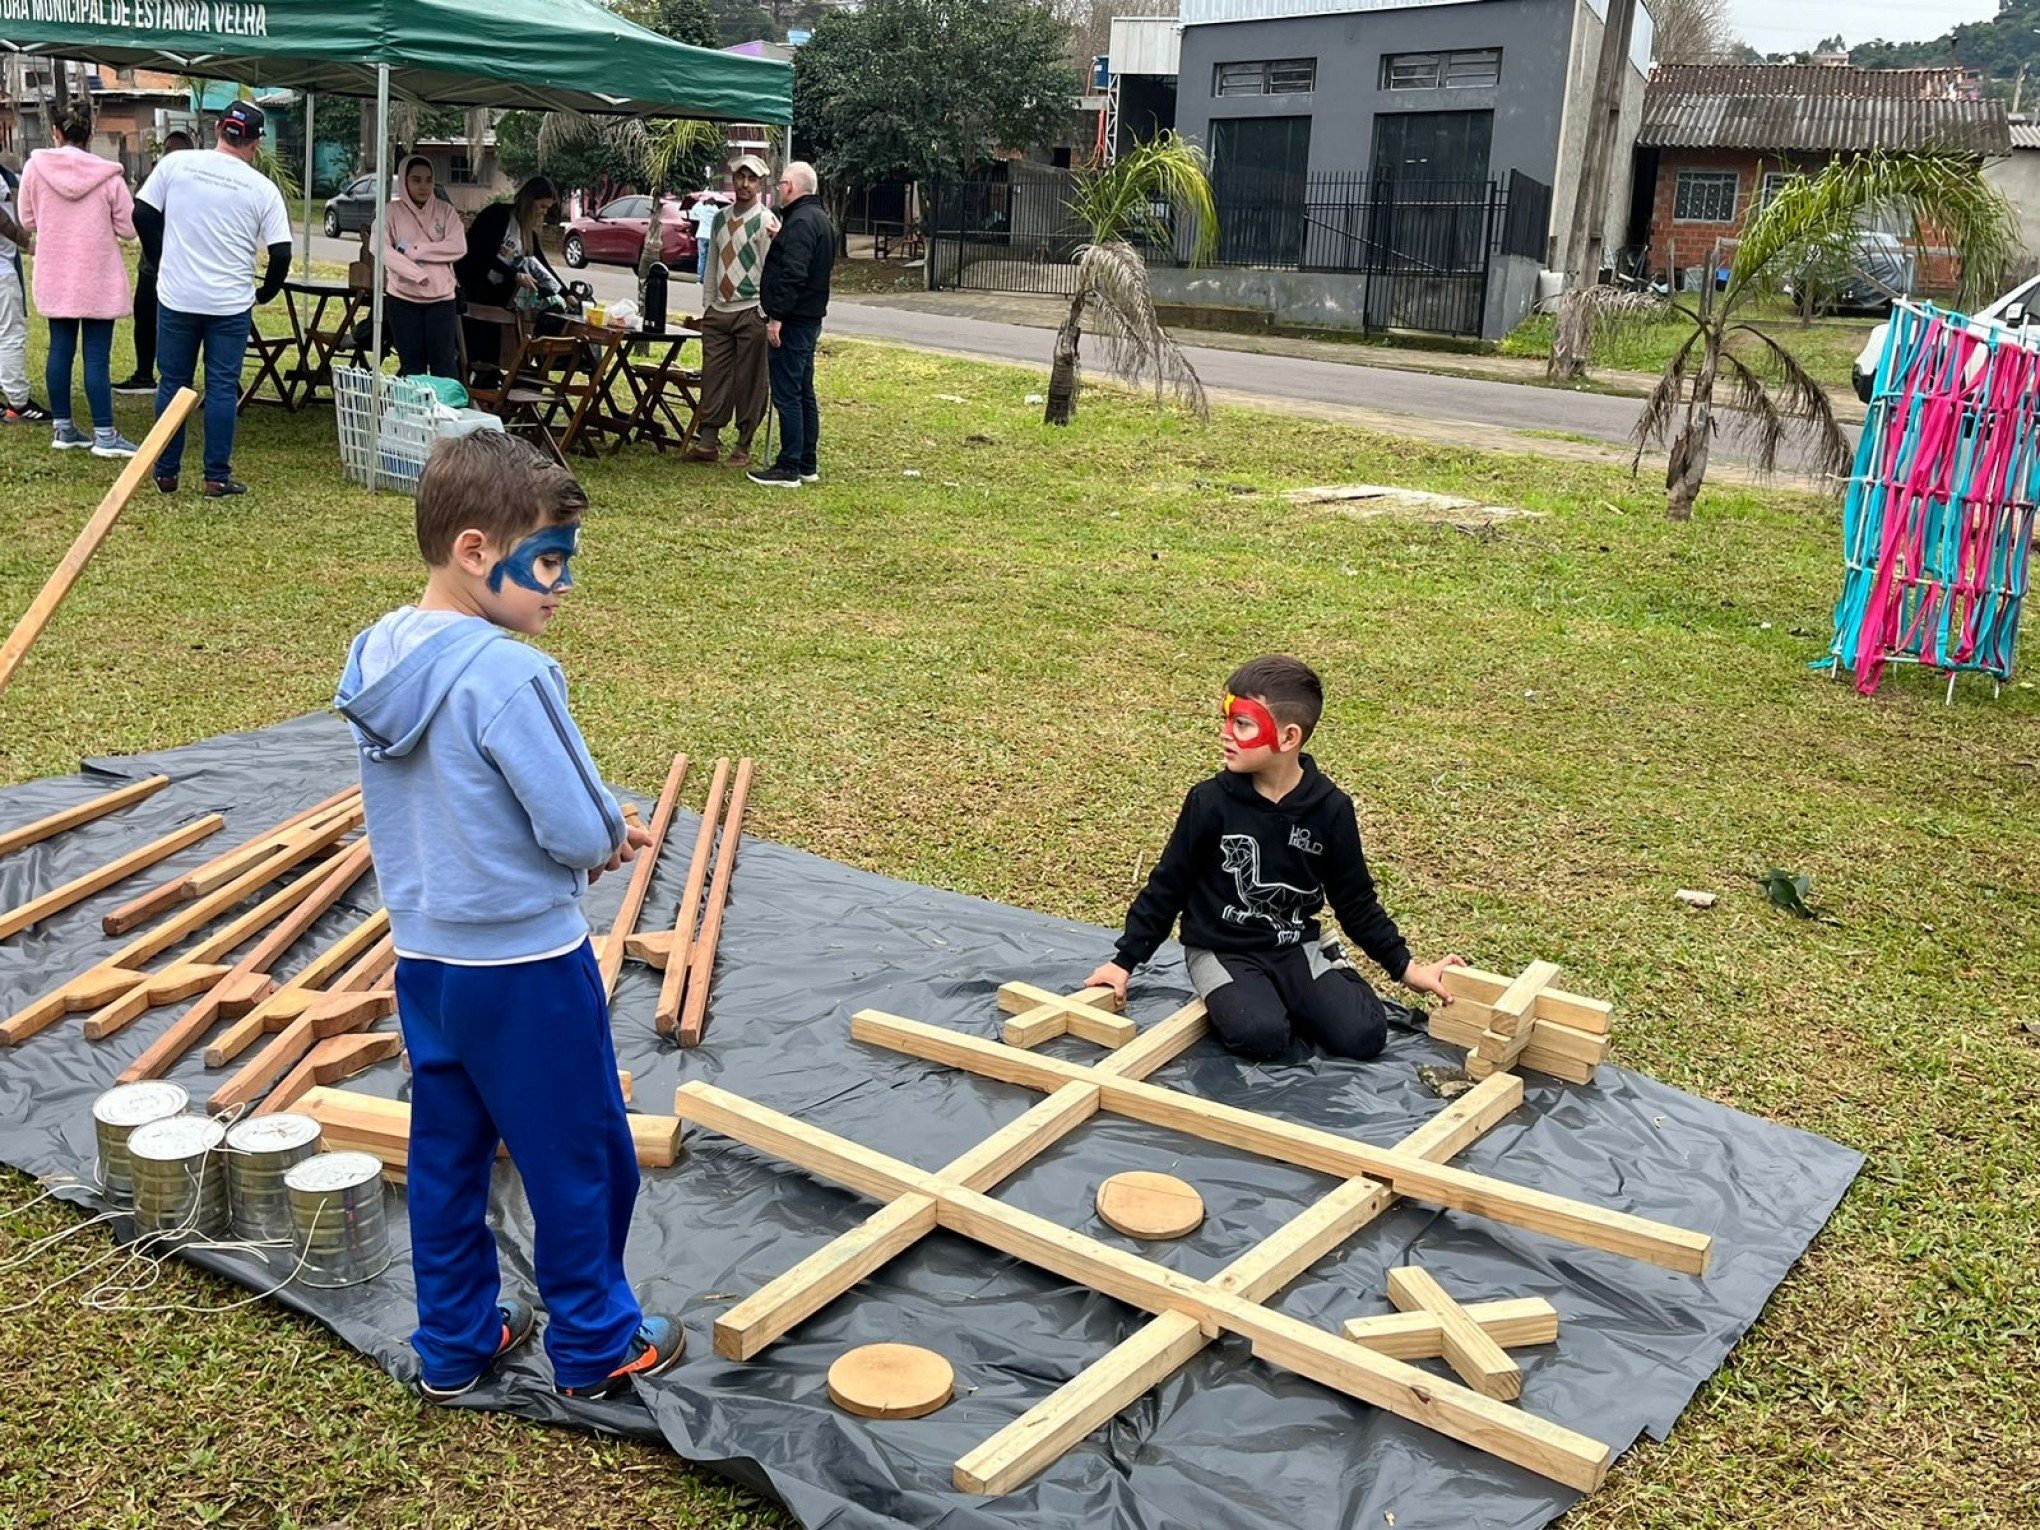 Crianças são foco no evento Vem Brincar na Praça de Estância Velha